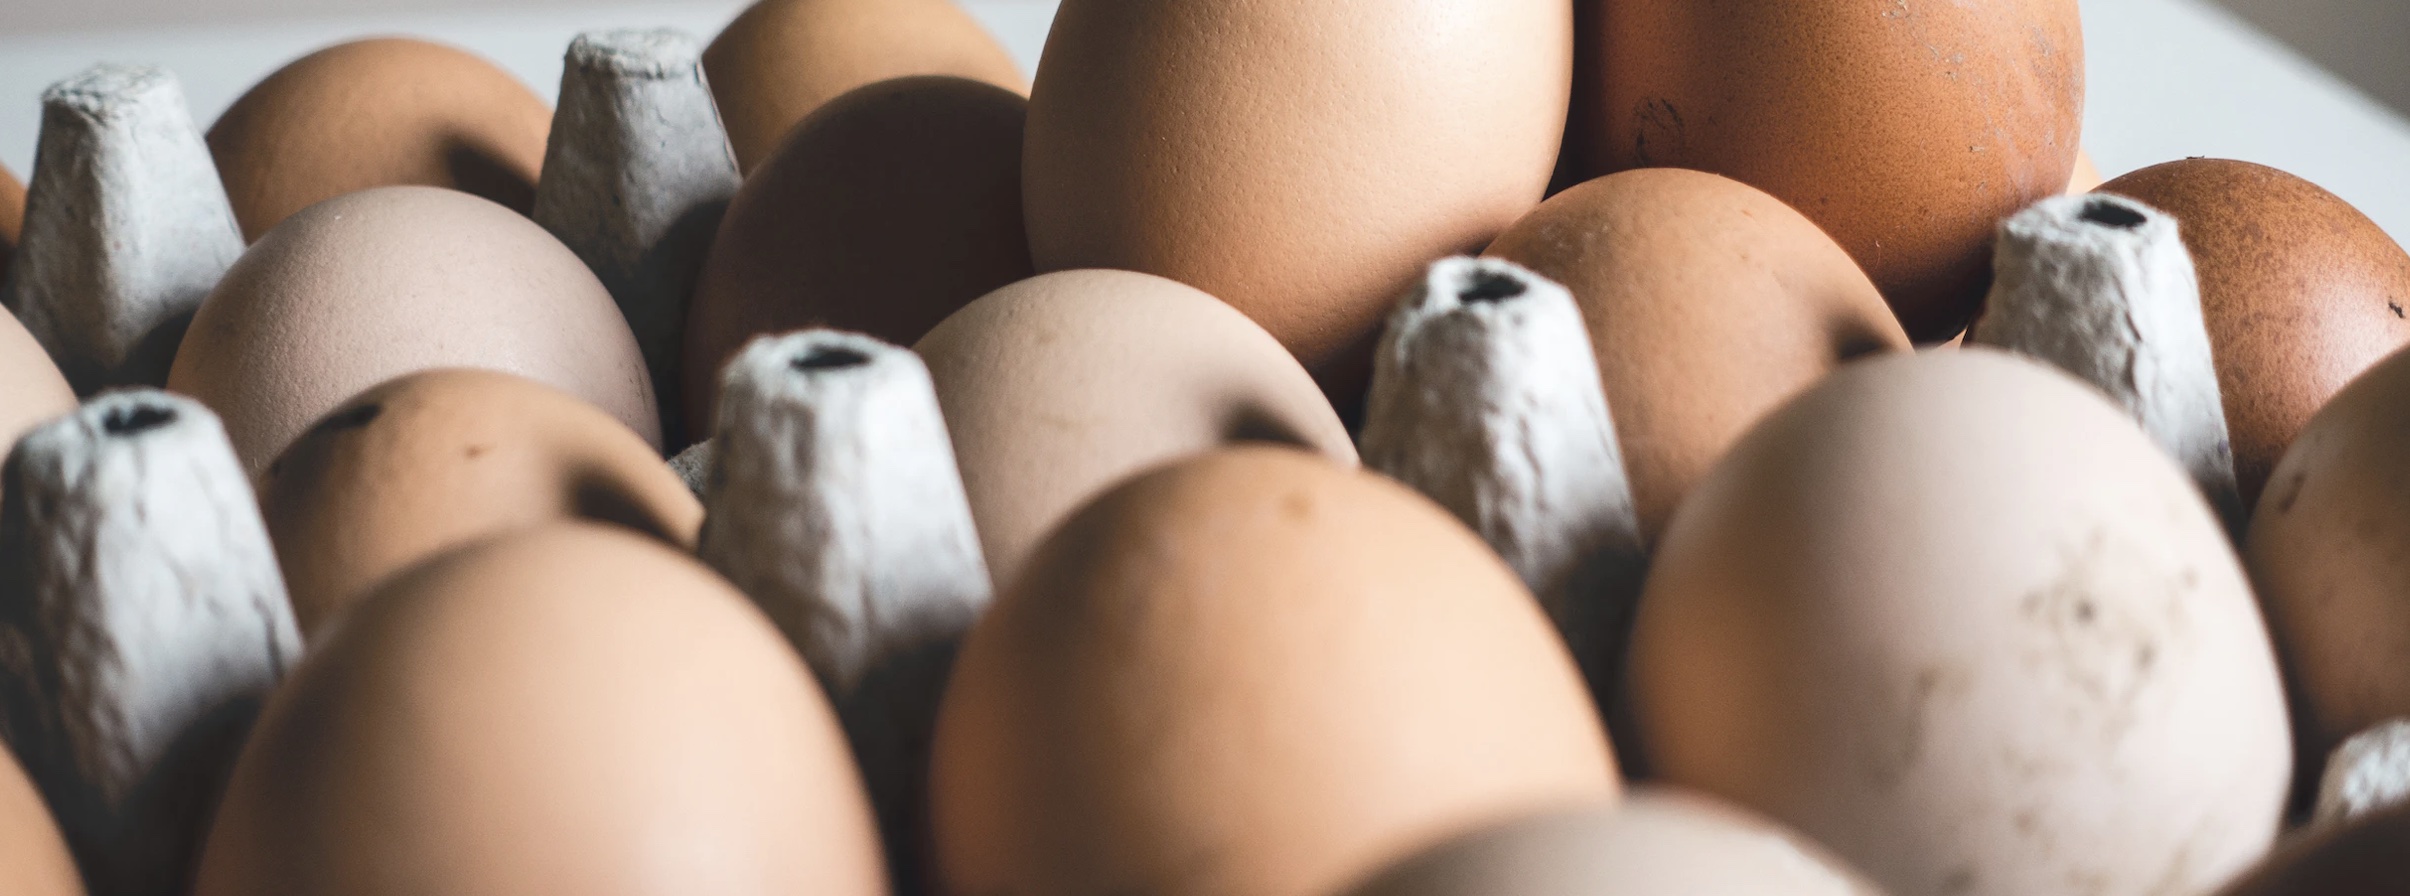 Производство куриных яиц падает: когда ждать нового роста цен